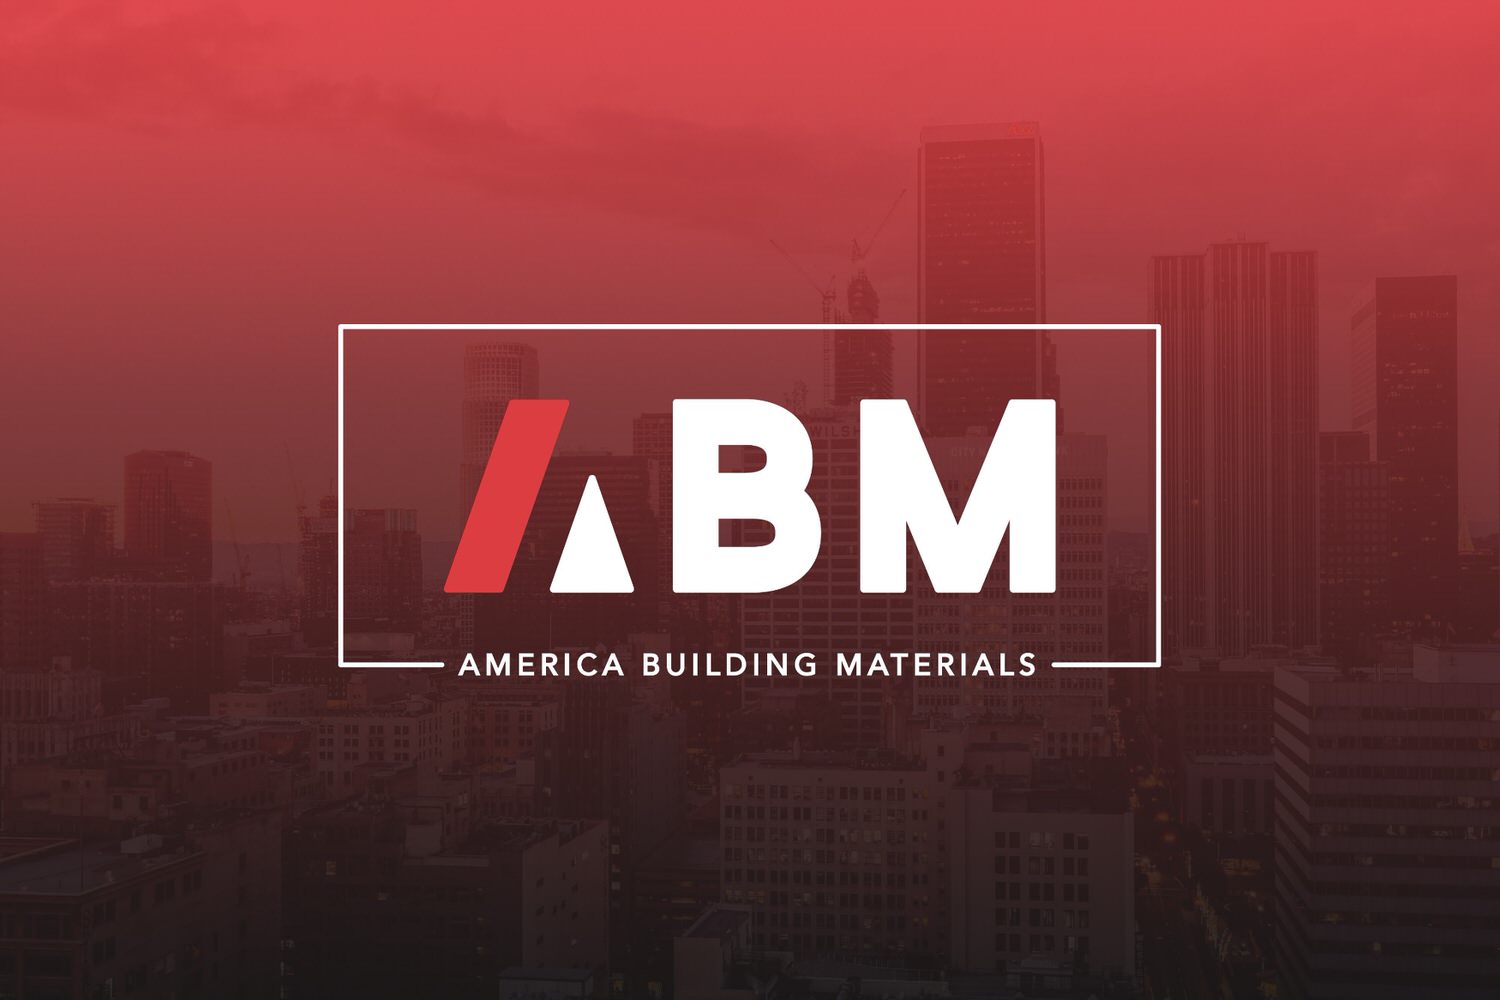 America Building Materials